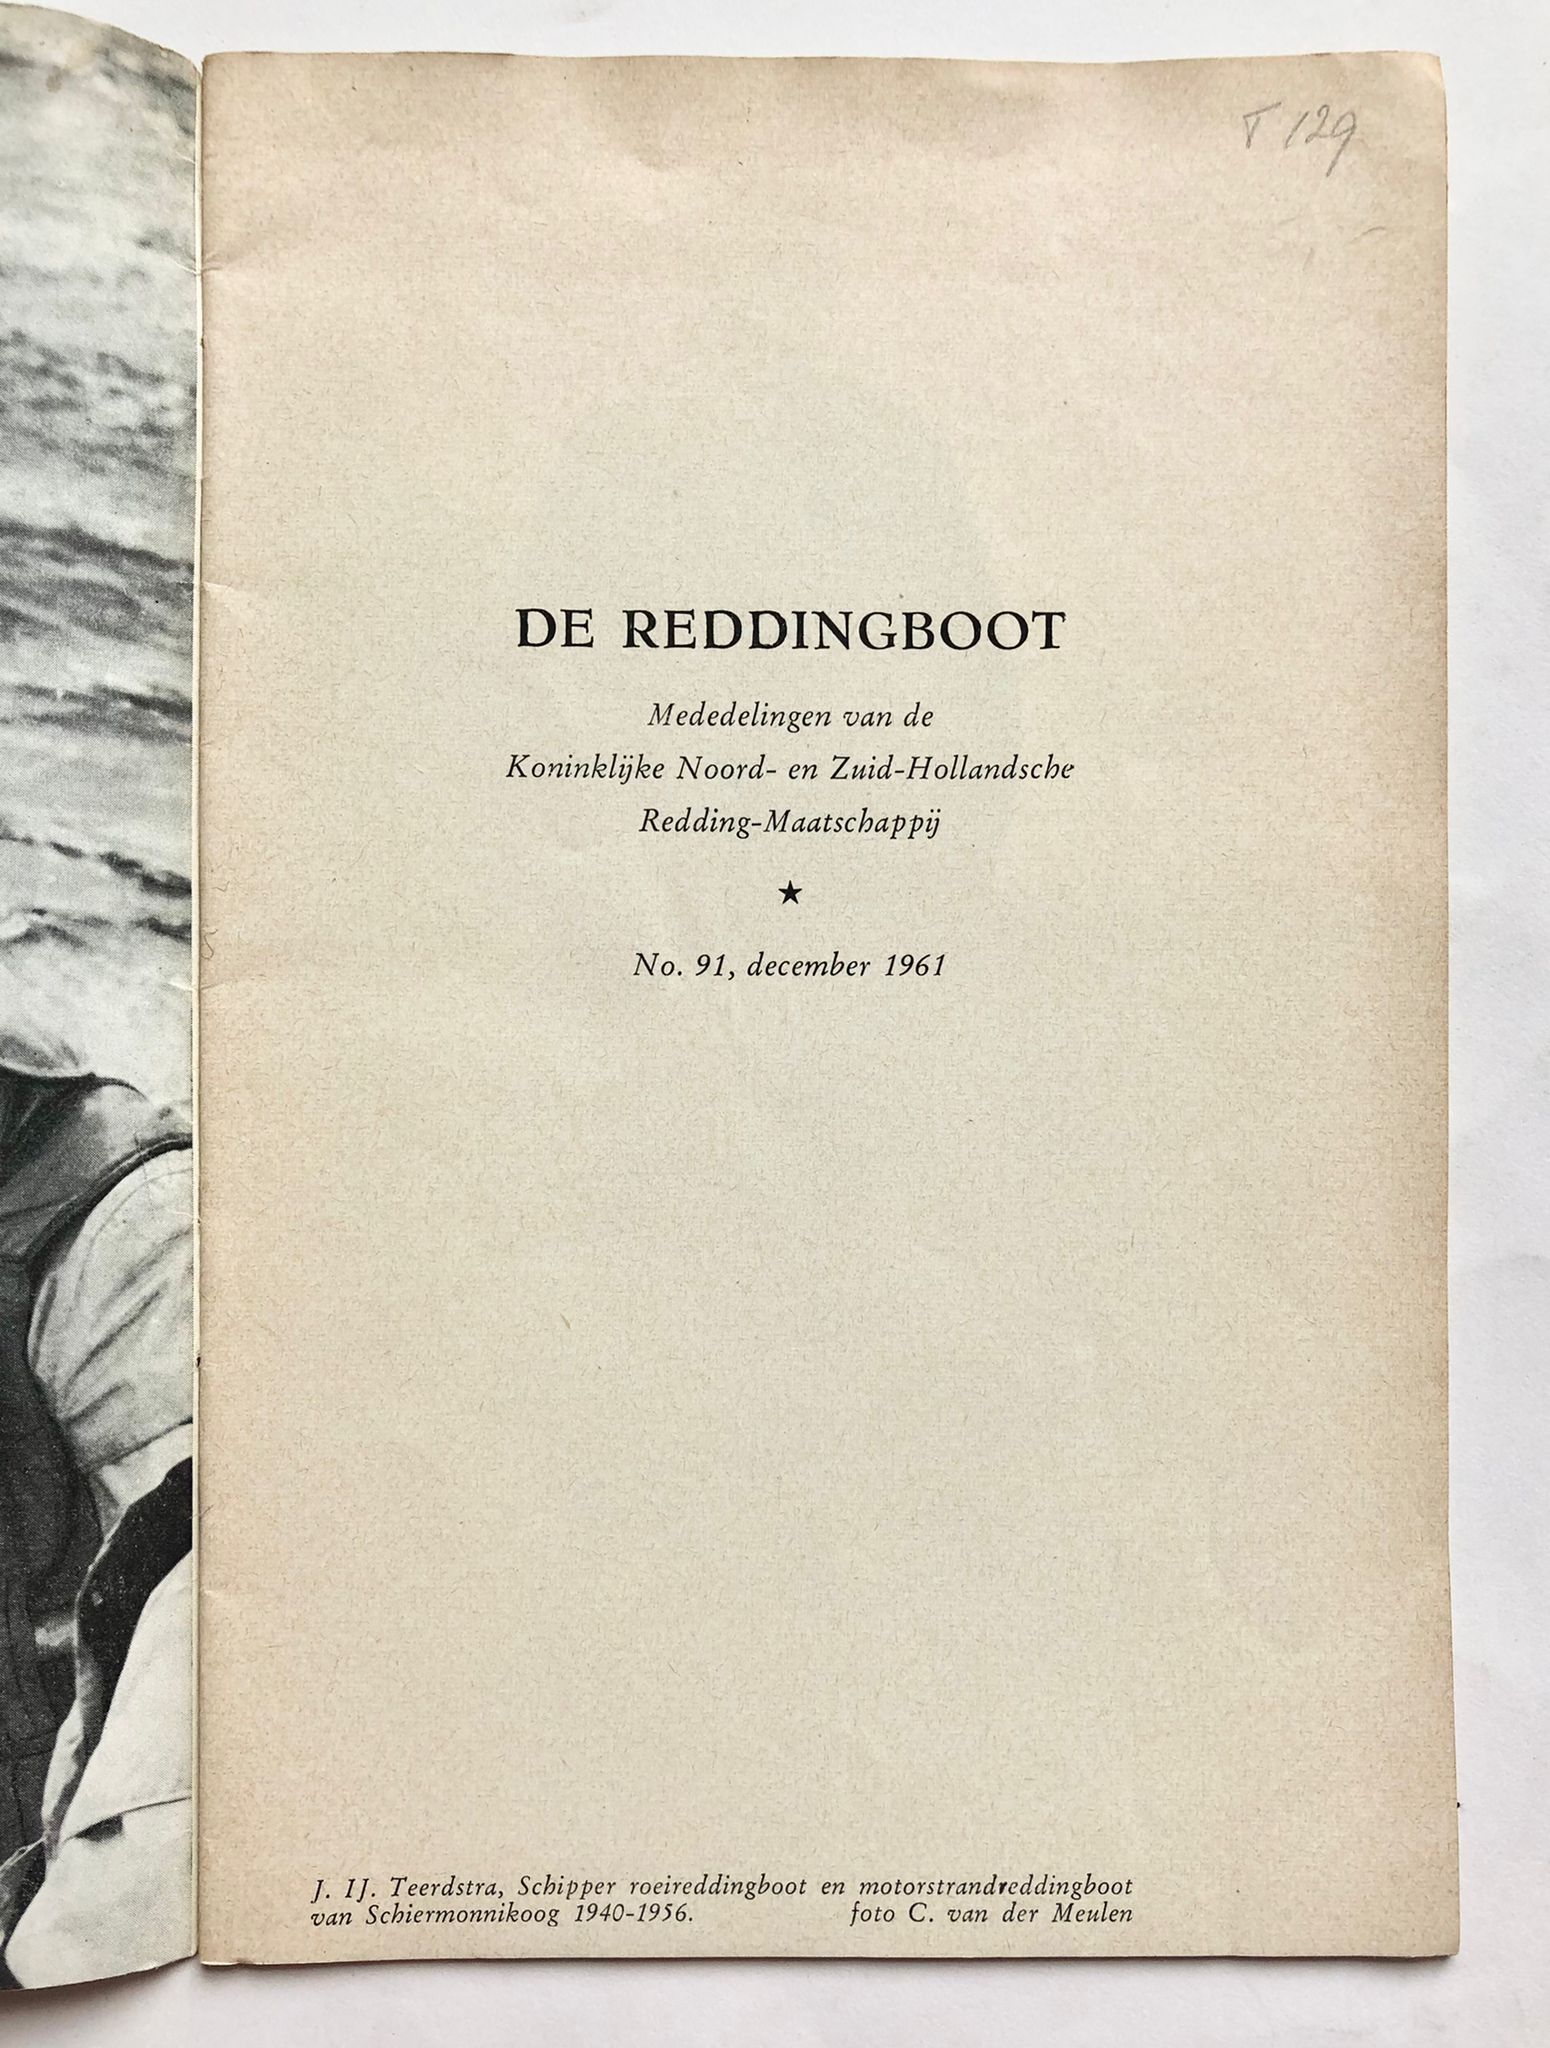 De reddingboot, Mededelingen van de Koninklijke Noord- en Zuid-Hollandsche Redding-maatschappij, No. 91, december 1961, Drukkerij Jacob van Campen, van pagina 3708-3736.